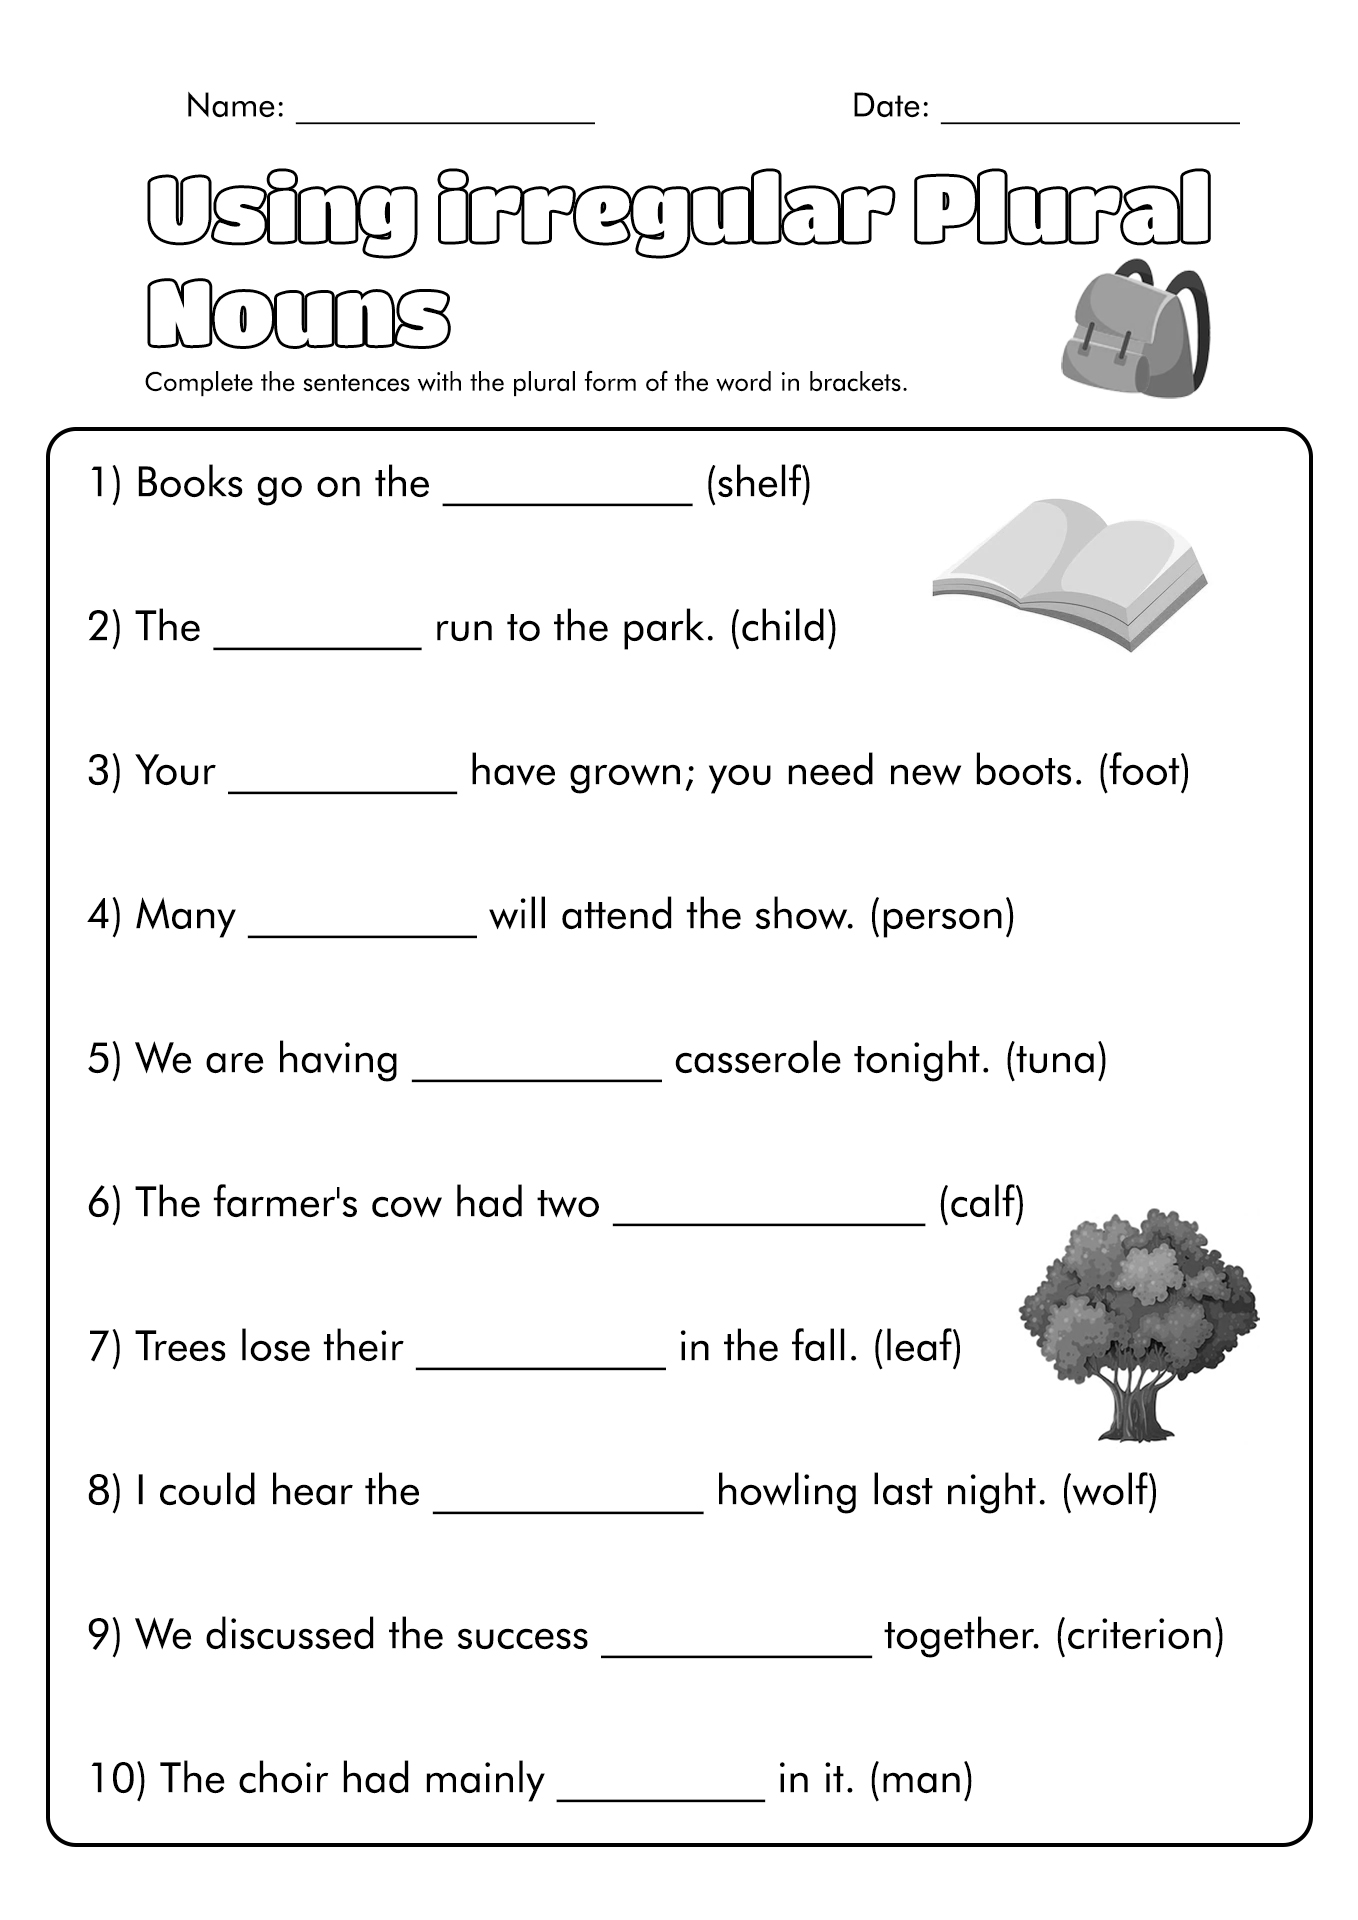 14-singular-plural-nouns-worksheets-free-pdf-at-worksheeto